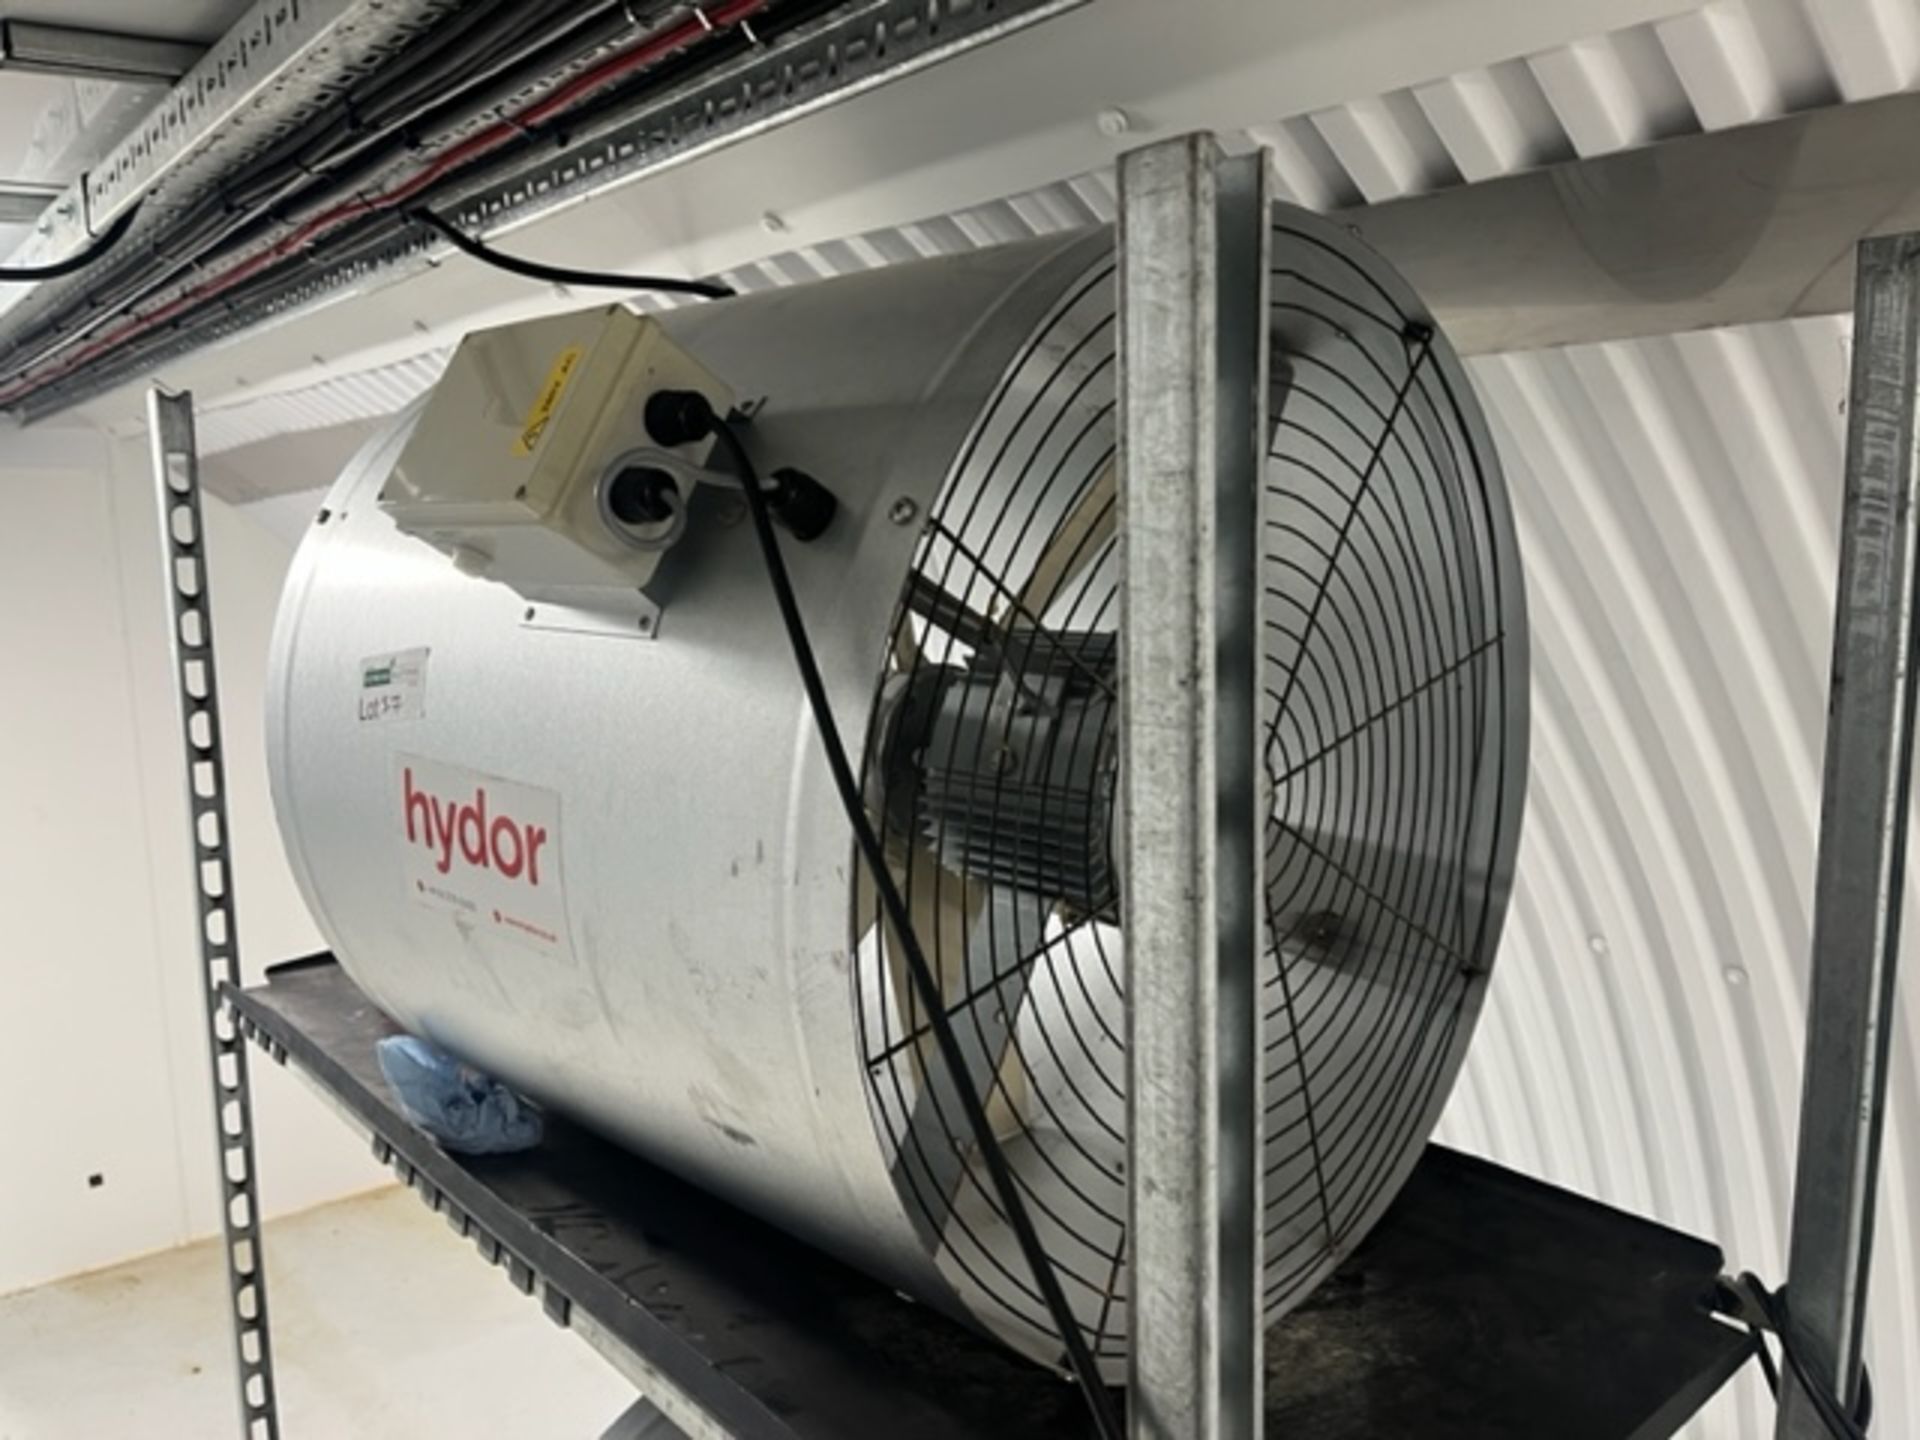 Hydor 600w Fan Serial 30375 - Image 2 of 2